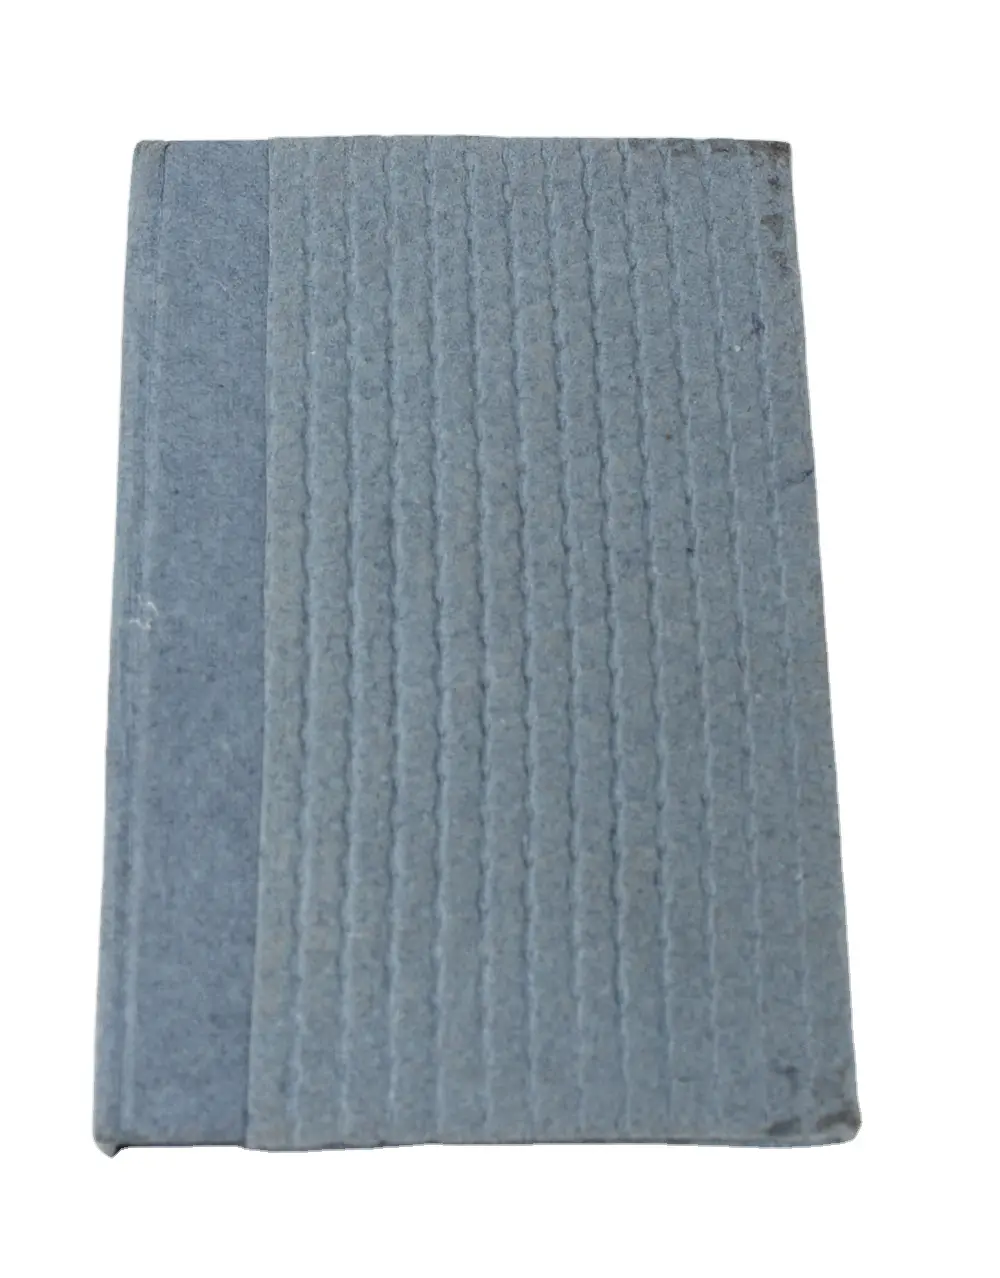 Papel de algodão artesanal reciclado à mão azul jeans (jeans), papel texturizado como cobertura com caderno de denim liso